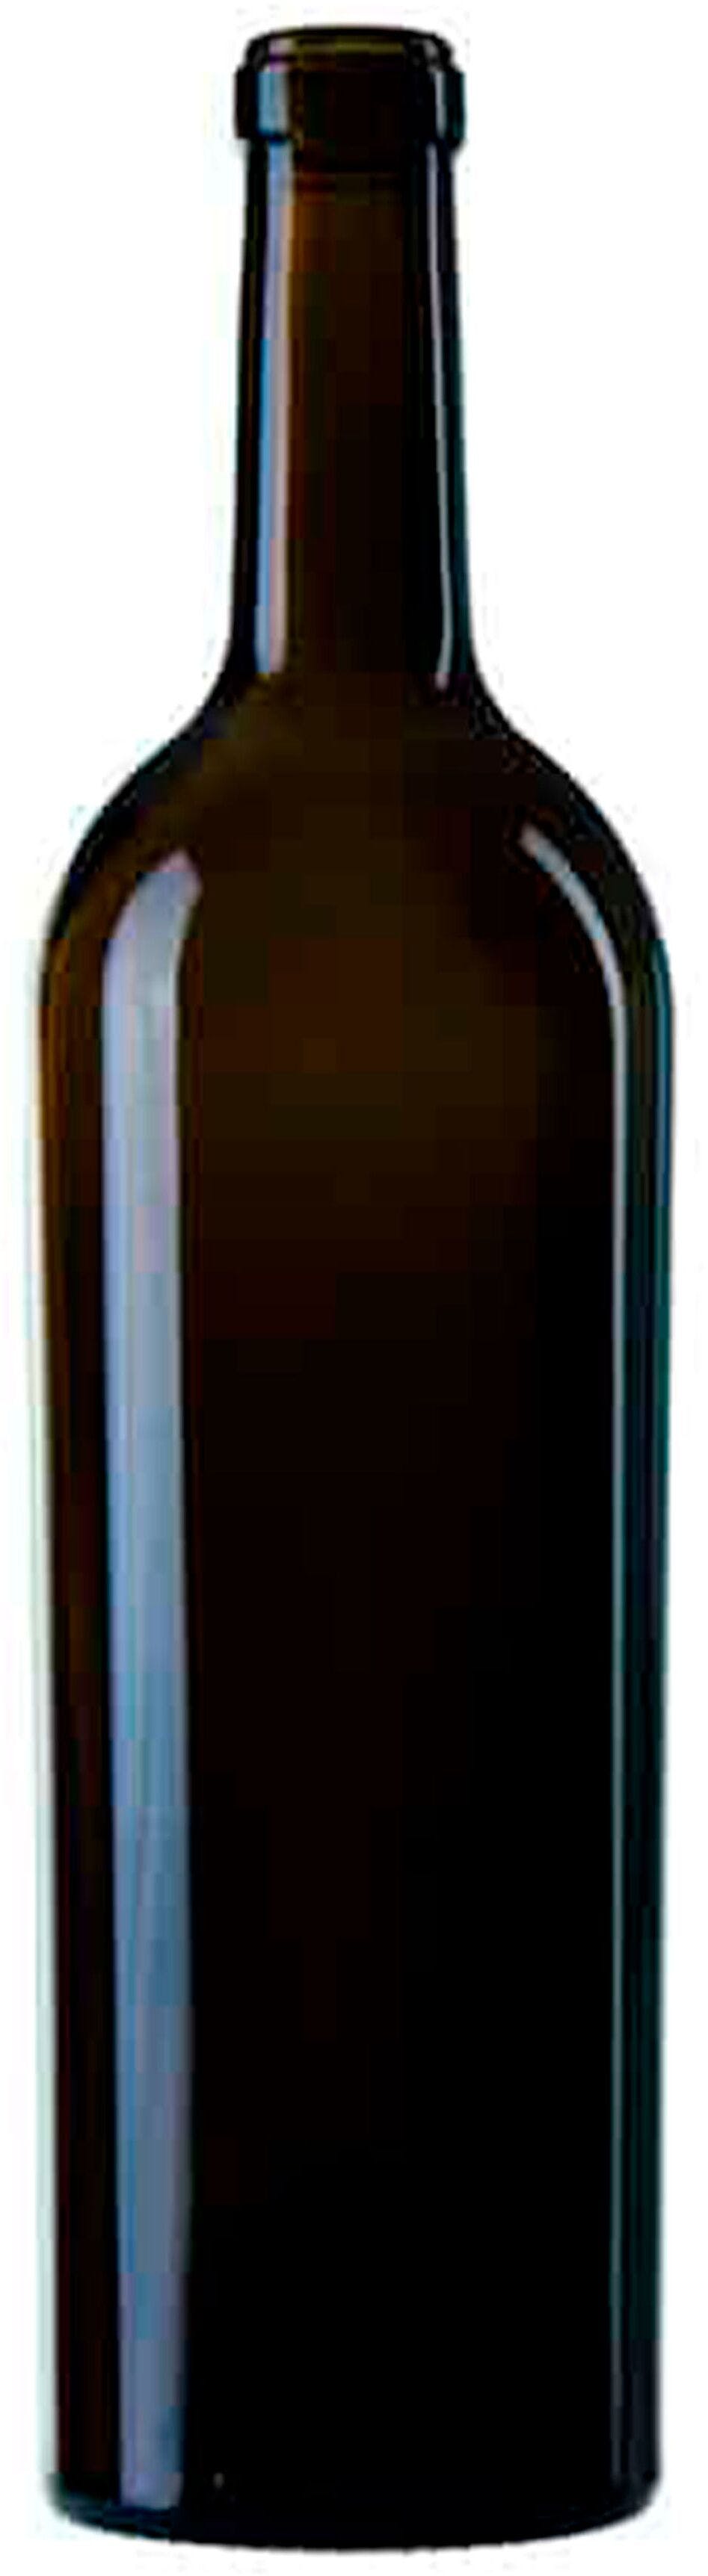 Bottiglia bordolese   ANNI 50 750 ml BG-Sughero